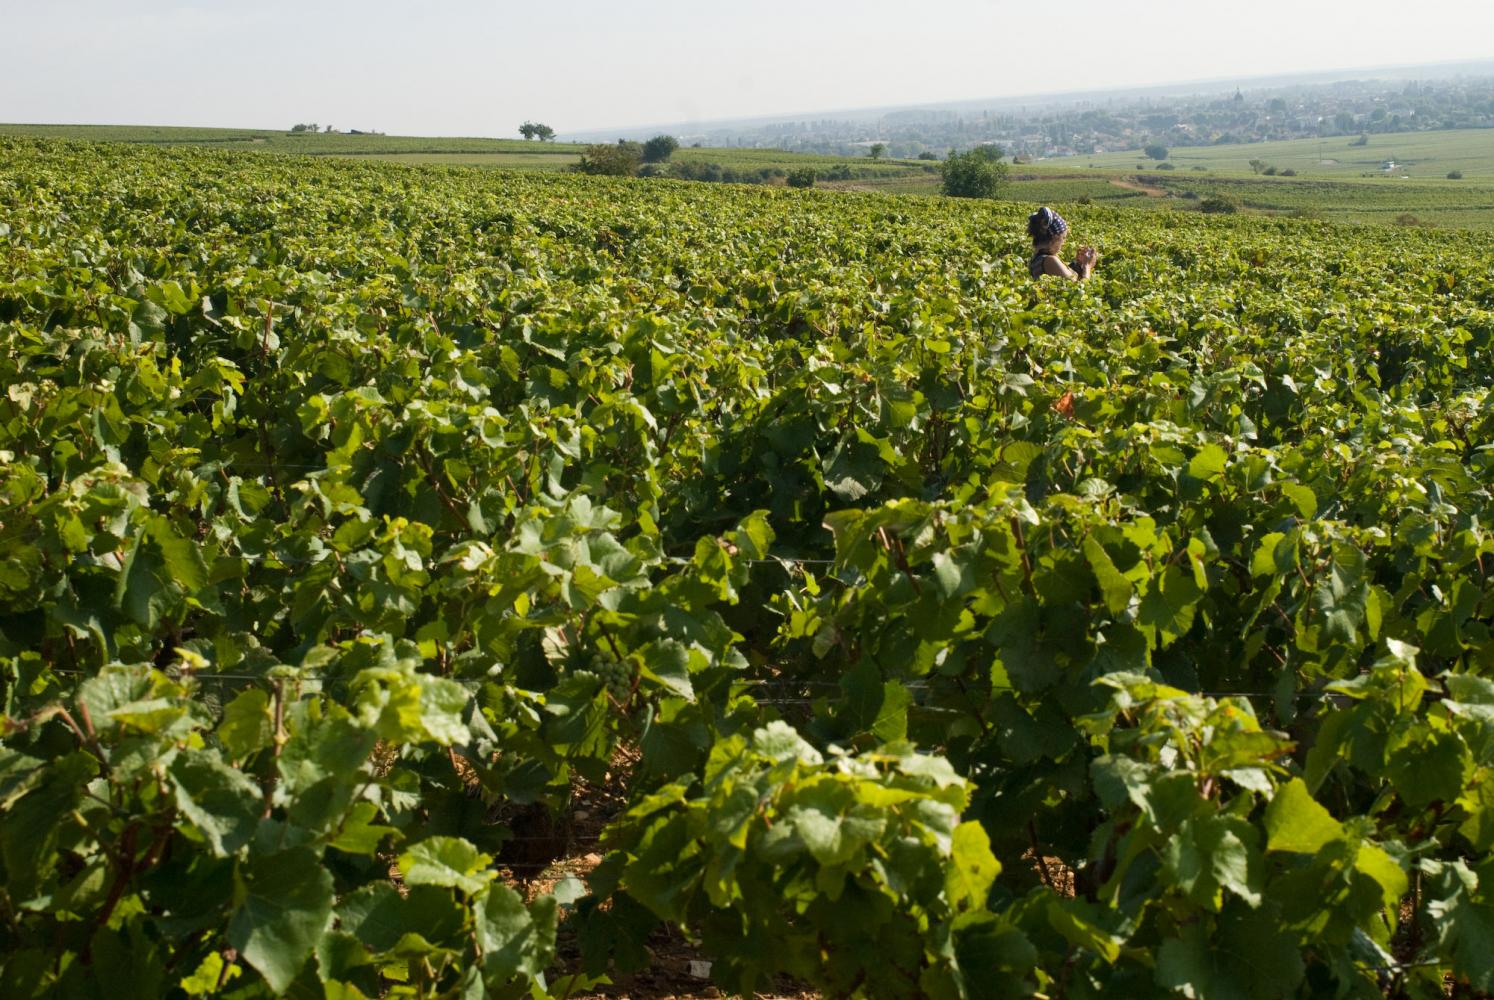 Un paysage valloné, des vignobles à l'infini, et Delphine qui dépasse jusqu'aux épaules. Pommard, Bourgogne, septembre 2009.